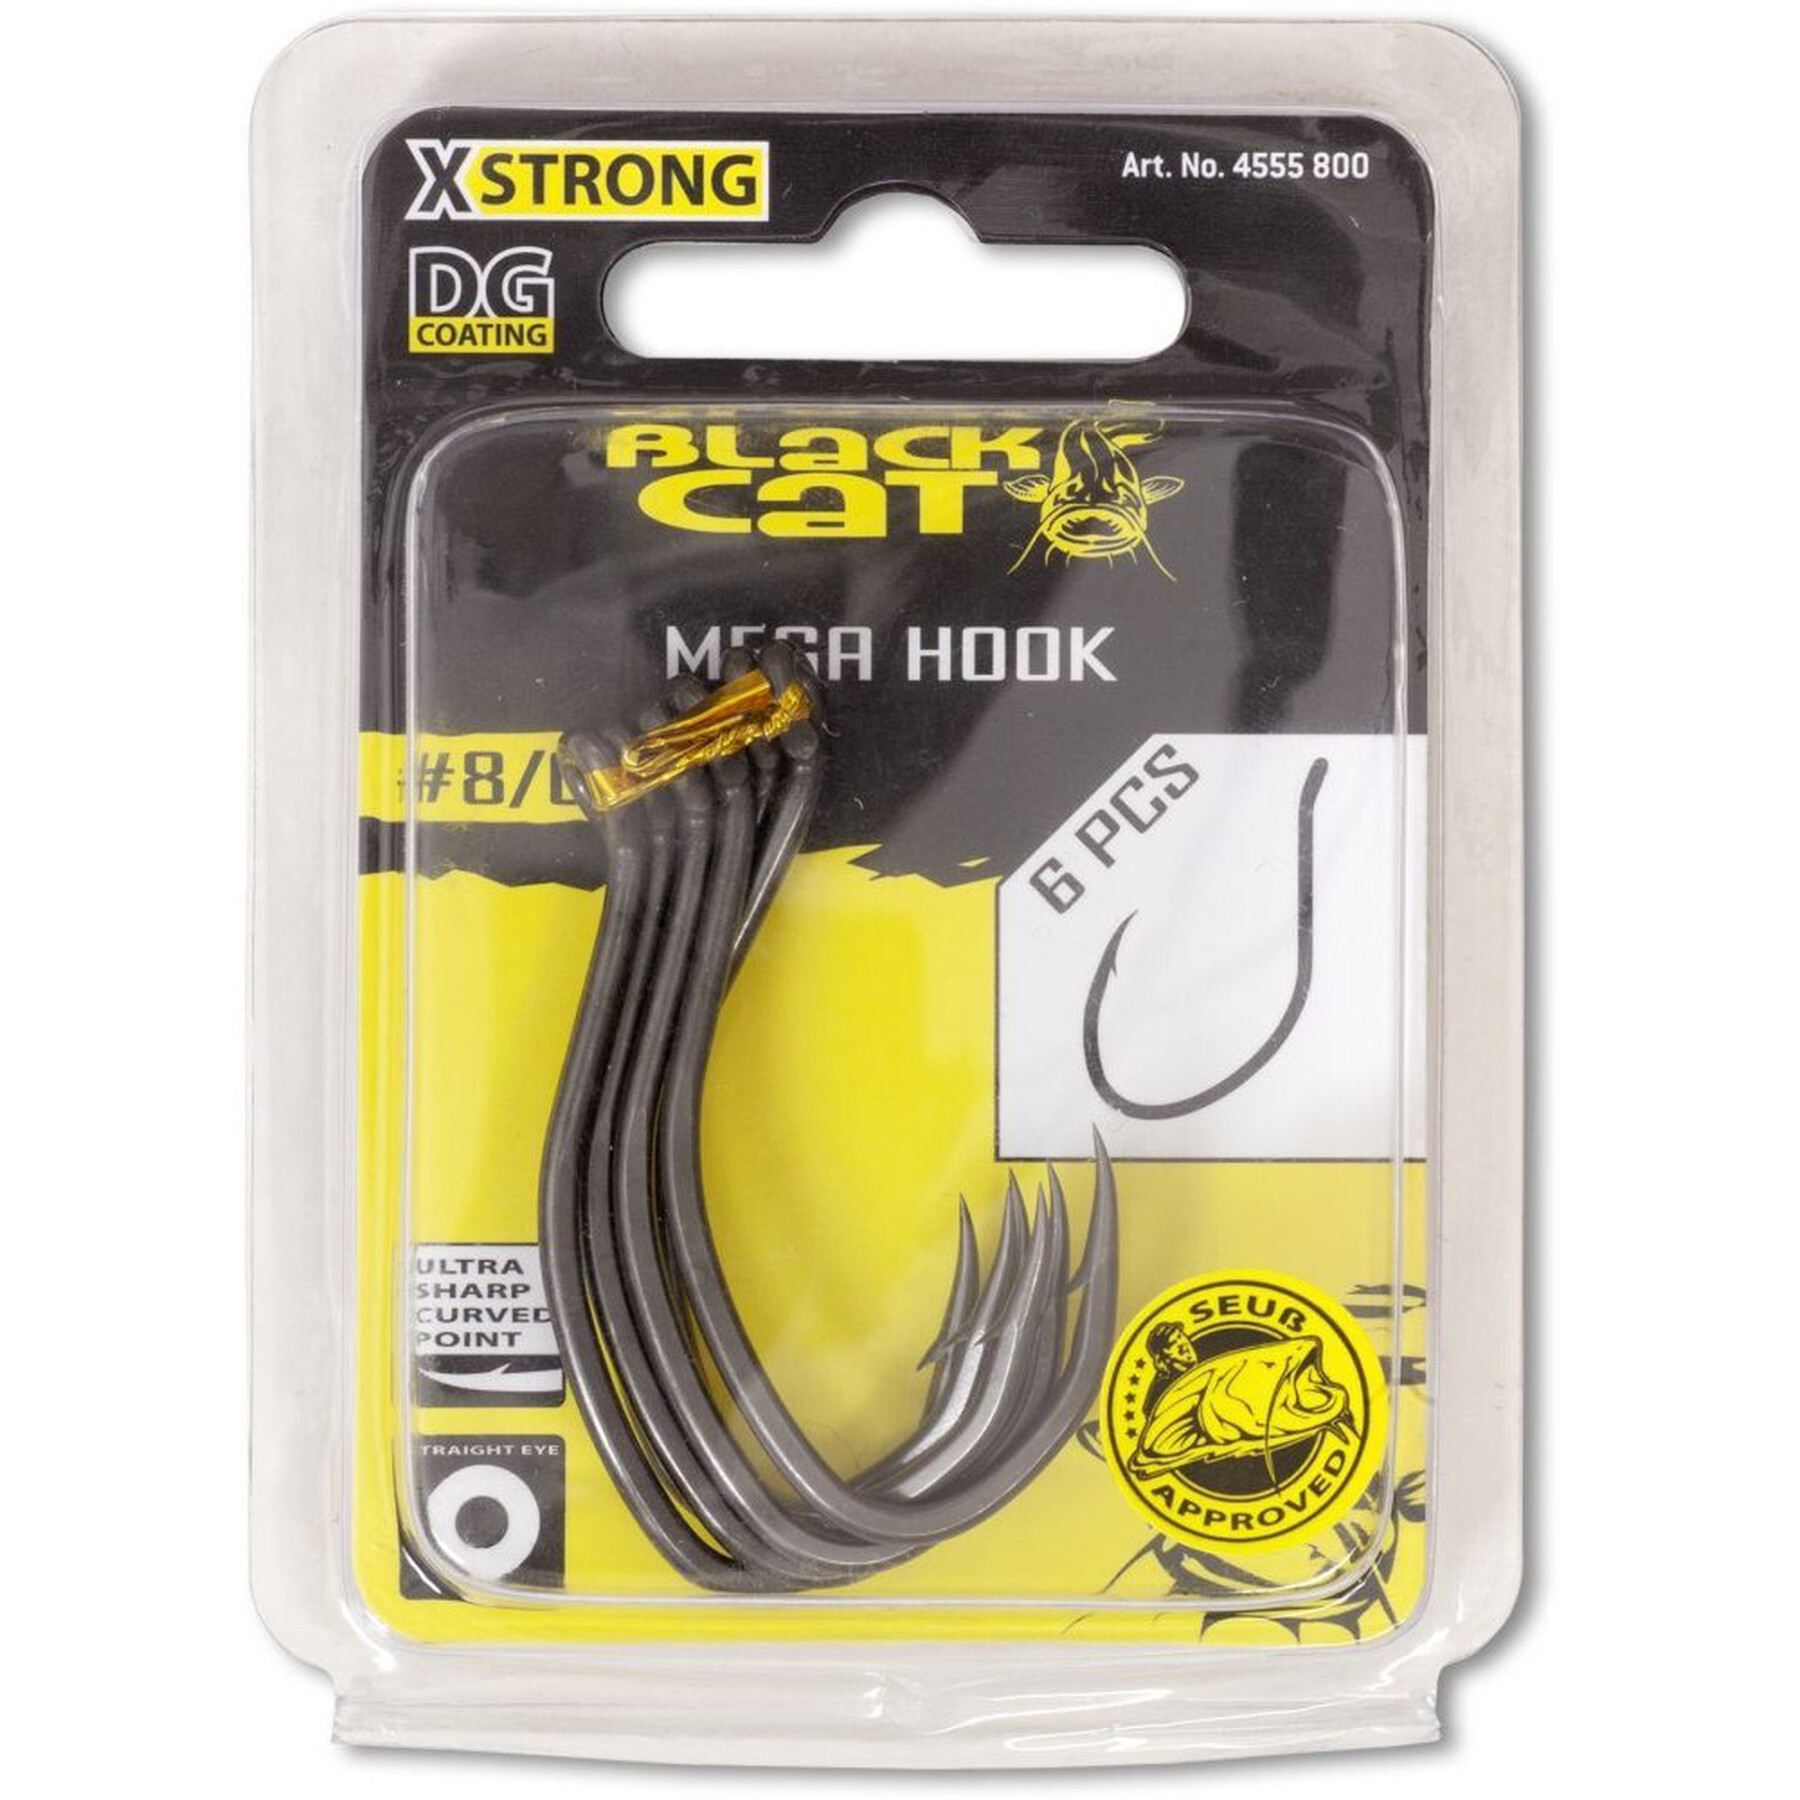 Pack of 6 hooks Black Cat Mega Hook DG